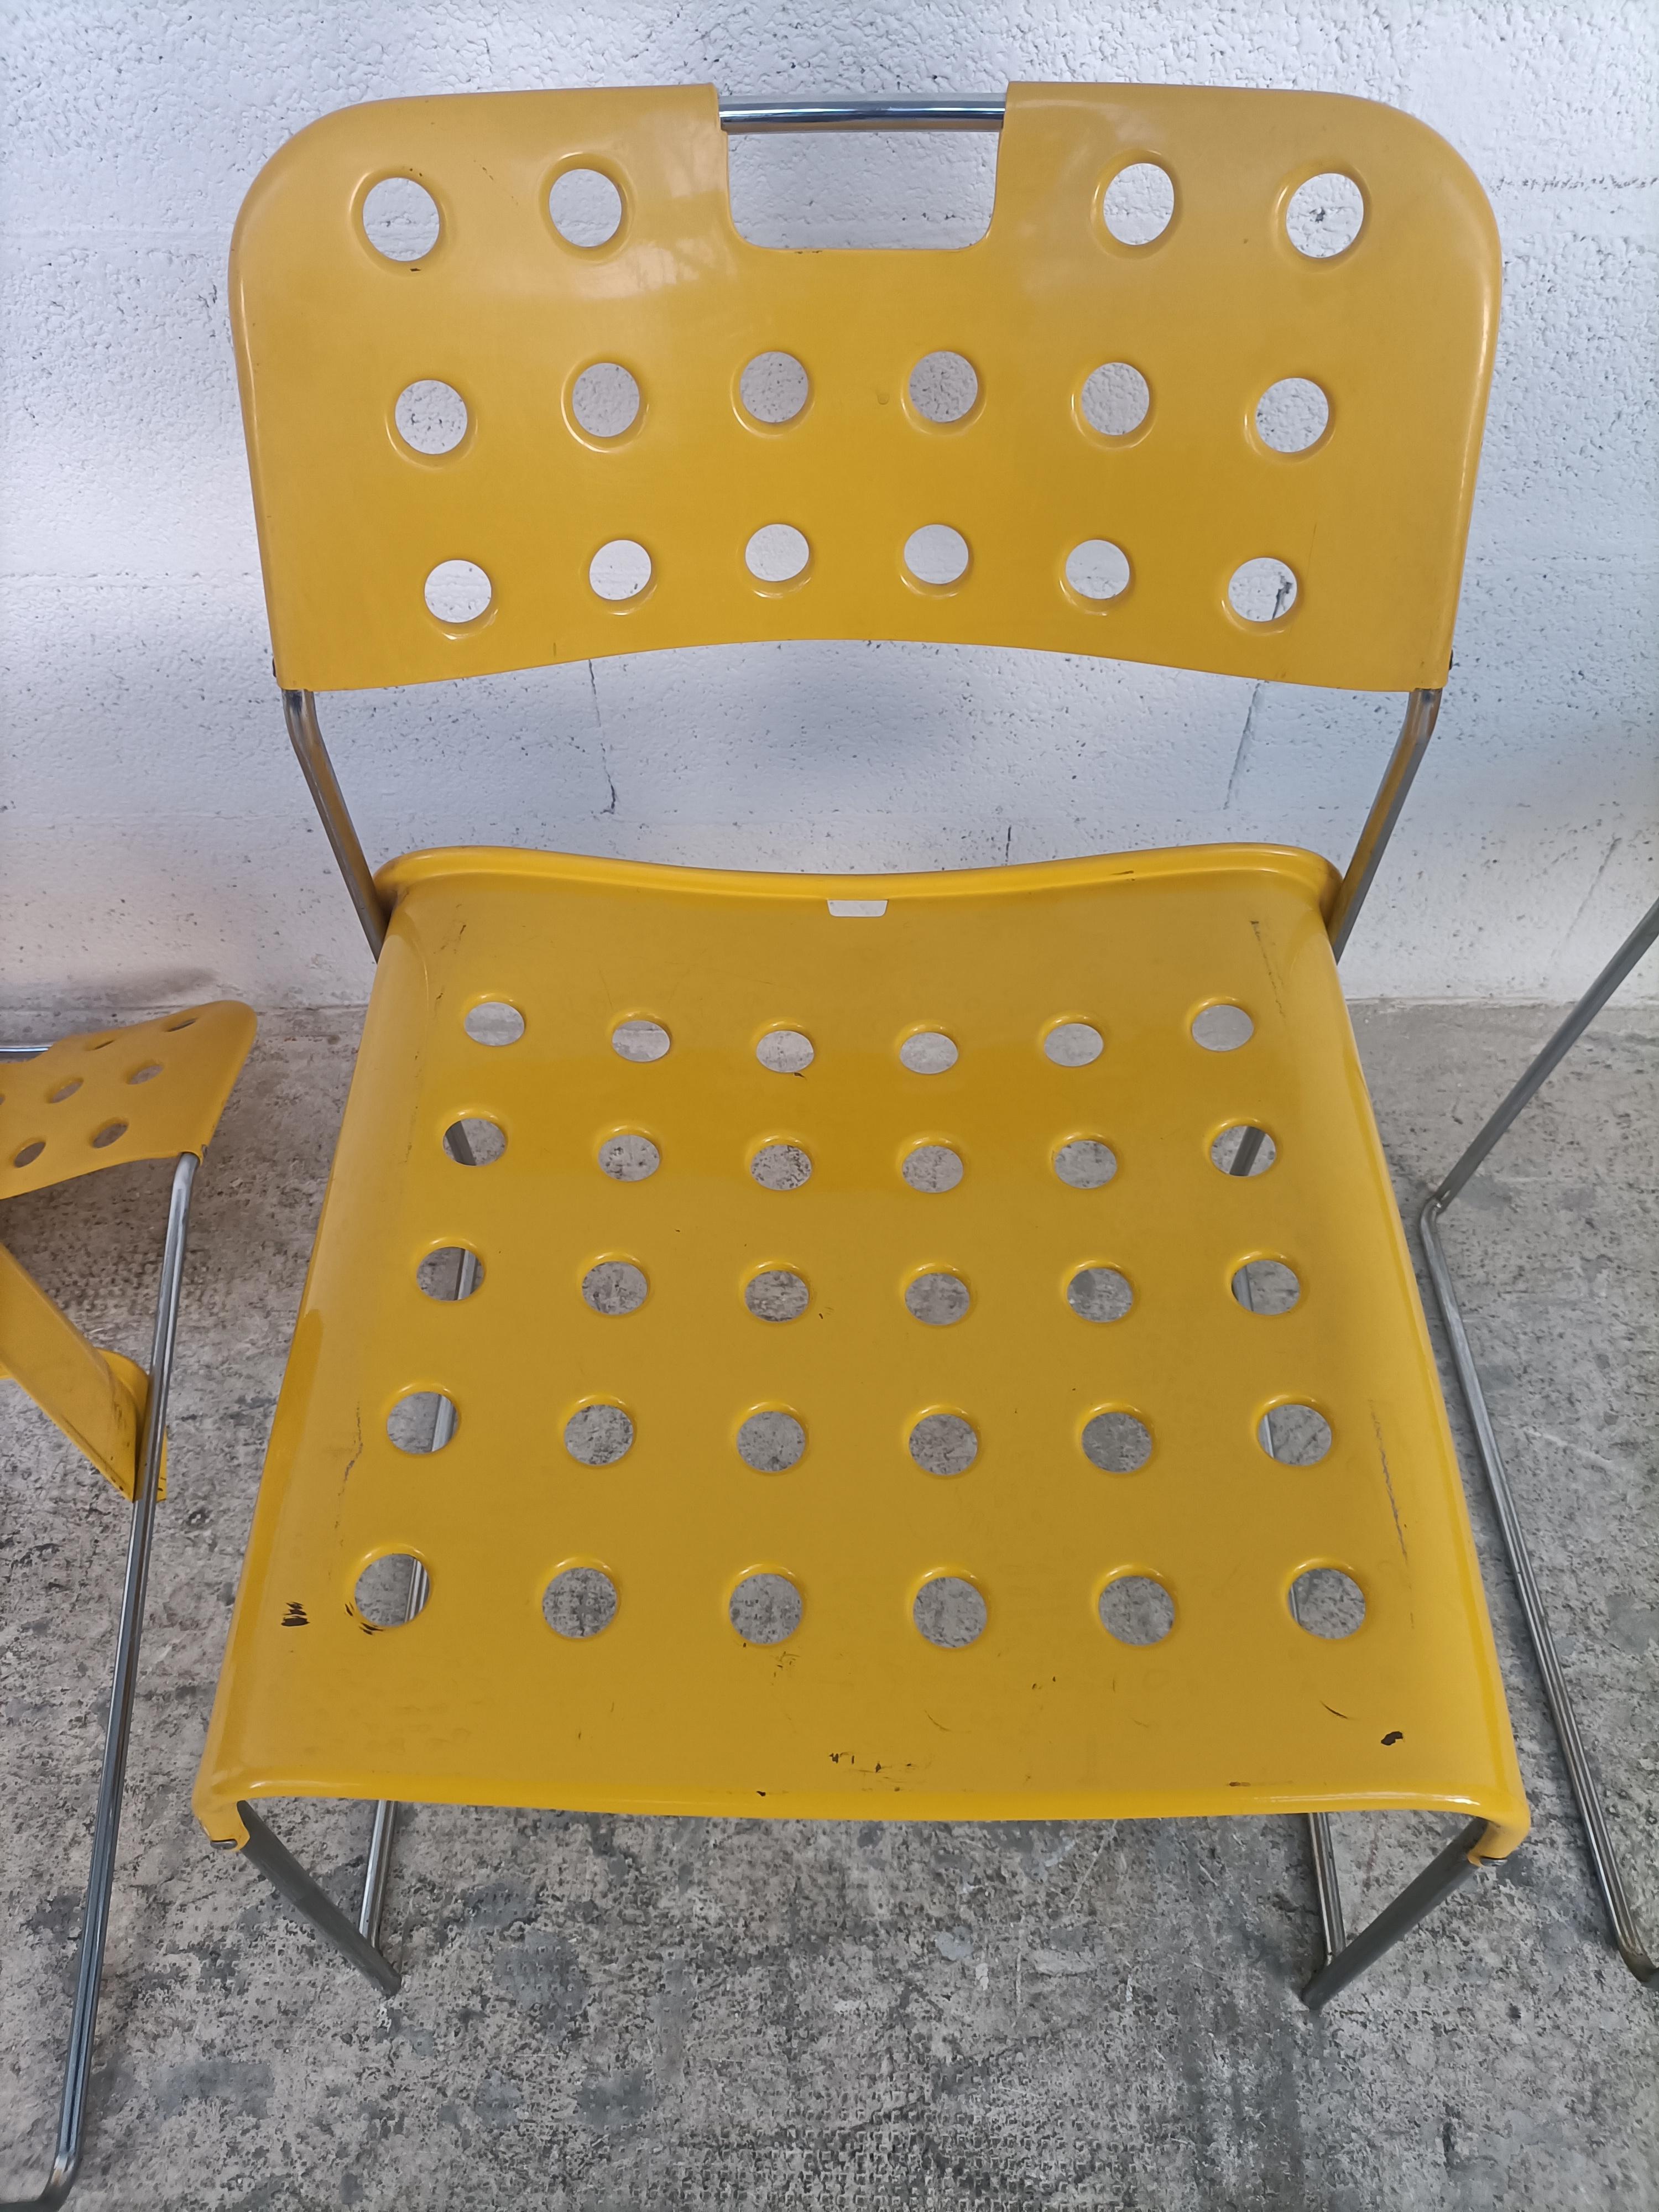 3 gelbe stapelbare Omkstak-Stühle von Rodney Kinsman für Bieffeplast, 70er-Jahre (Ende des 20. Jahrhunderts)